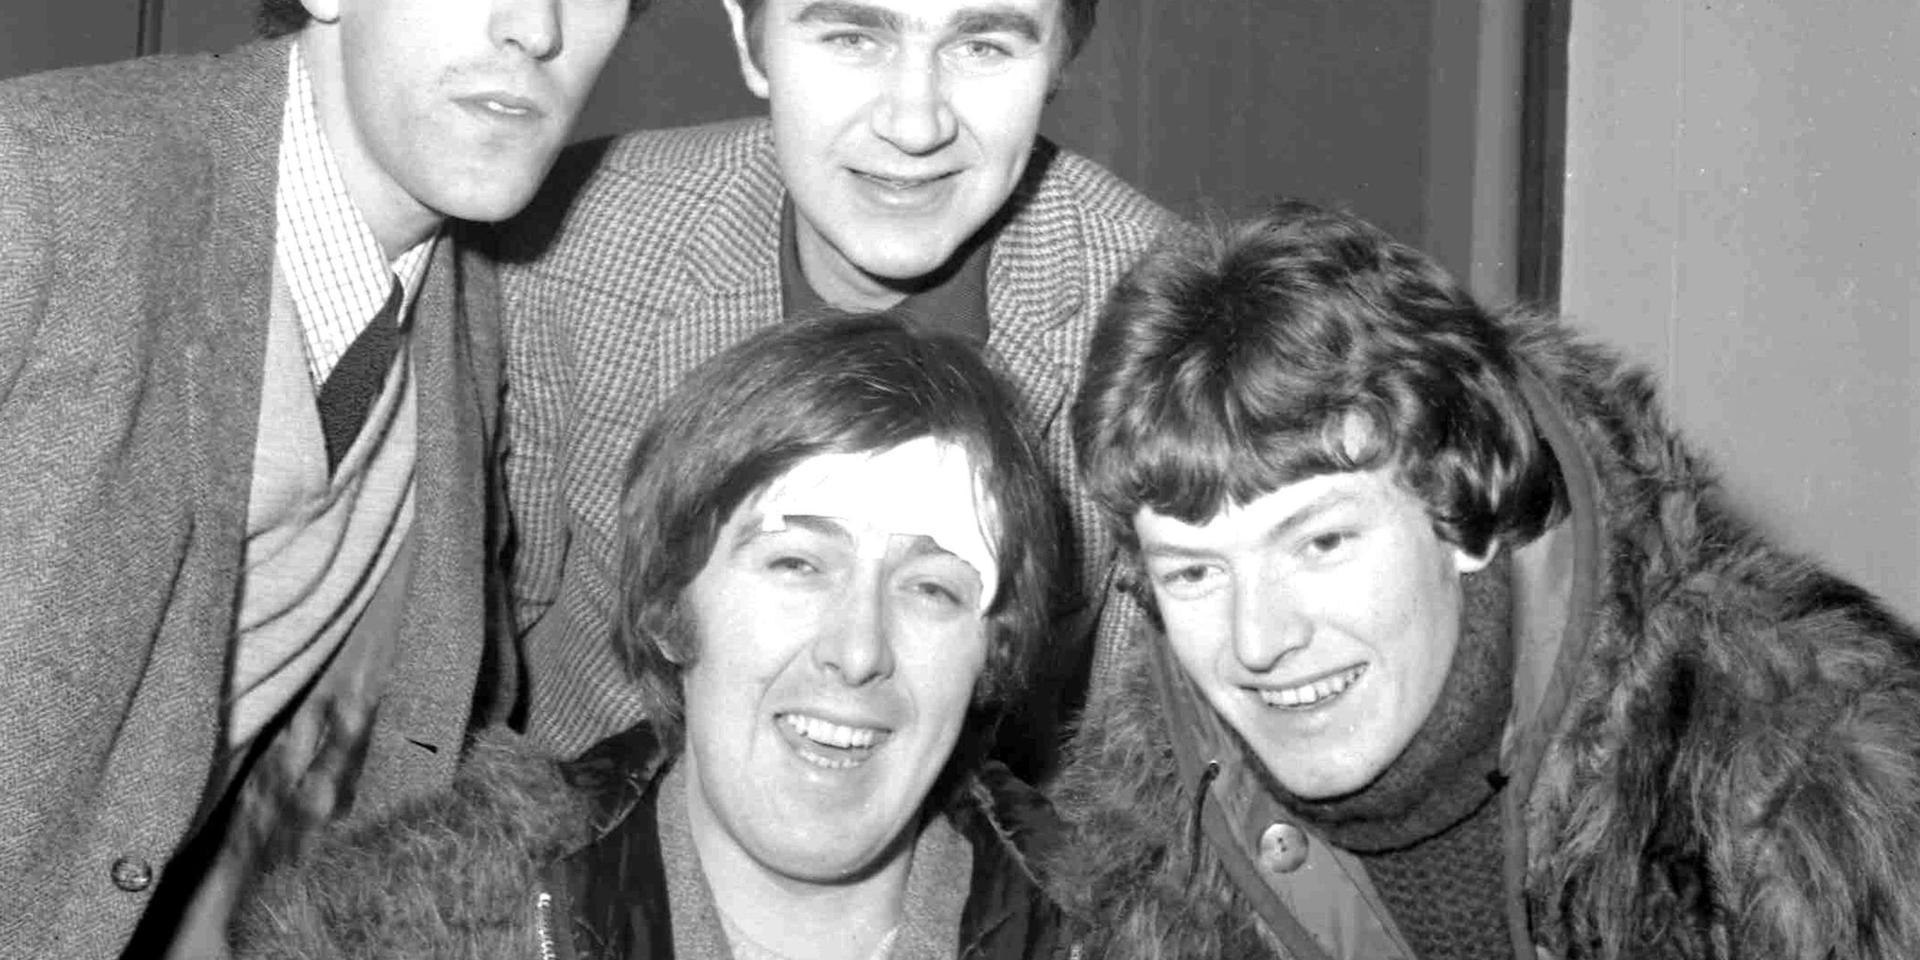 Spencer Davis, i mitten, med en omplåstrad panna efter en bilolycka, tillsammans med övriga medlemmar i The Spencer Davis Group. Året är 1966. Arkivbild.